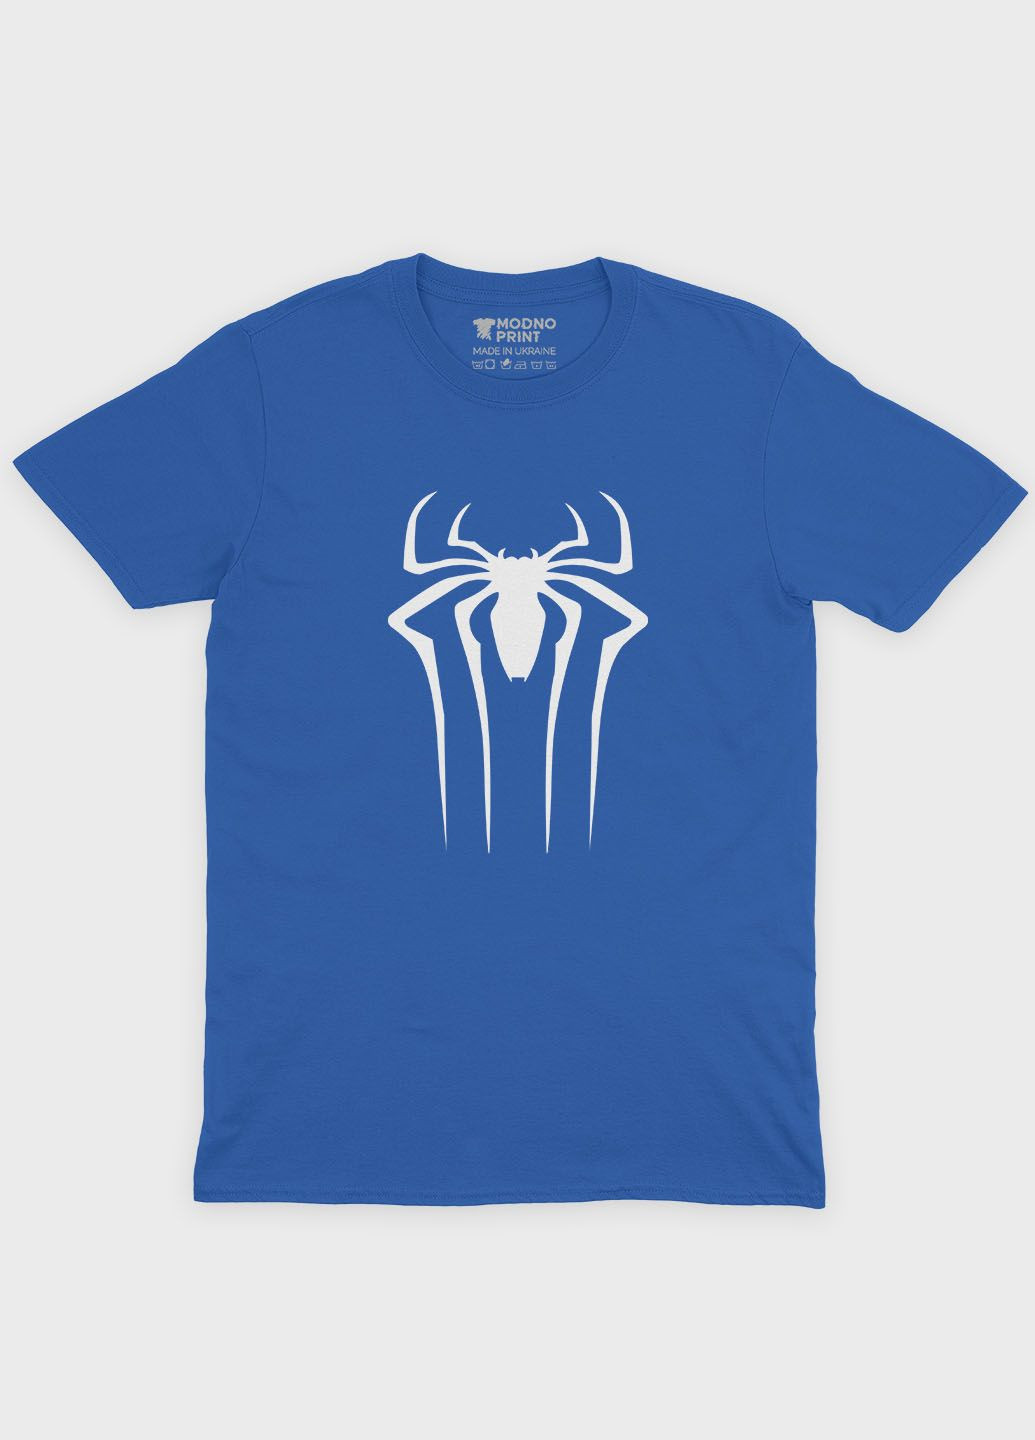 Синяя демисезонная футболка для мальчика с принтом супергероя - человек-паук (ts001-1-brr-006-014-107-b) Modno